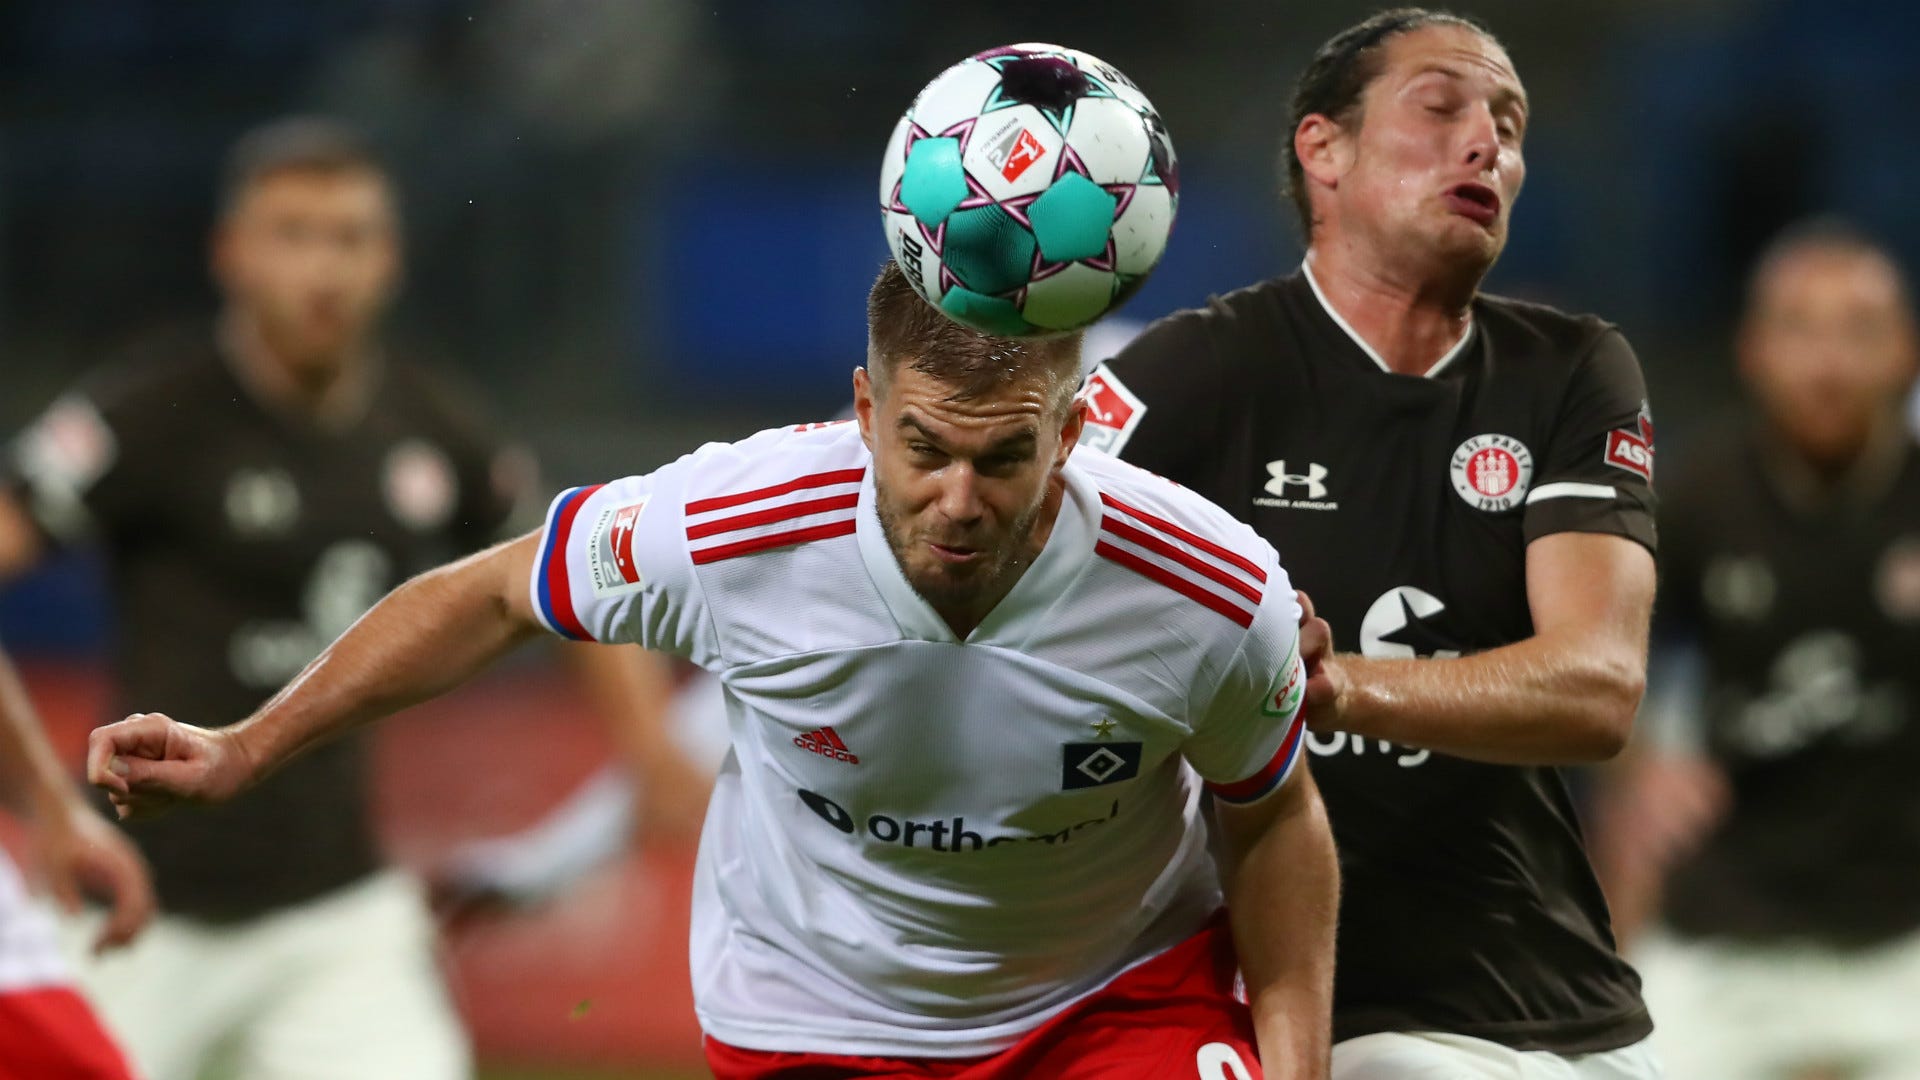 Kein Sieger im Hamburg-Derby! HSV gegen FC St